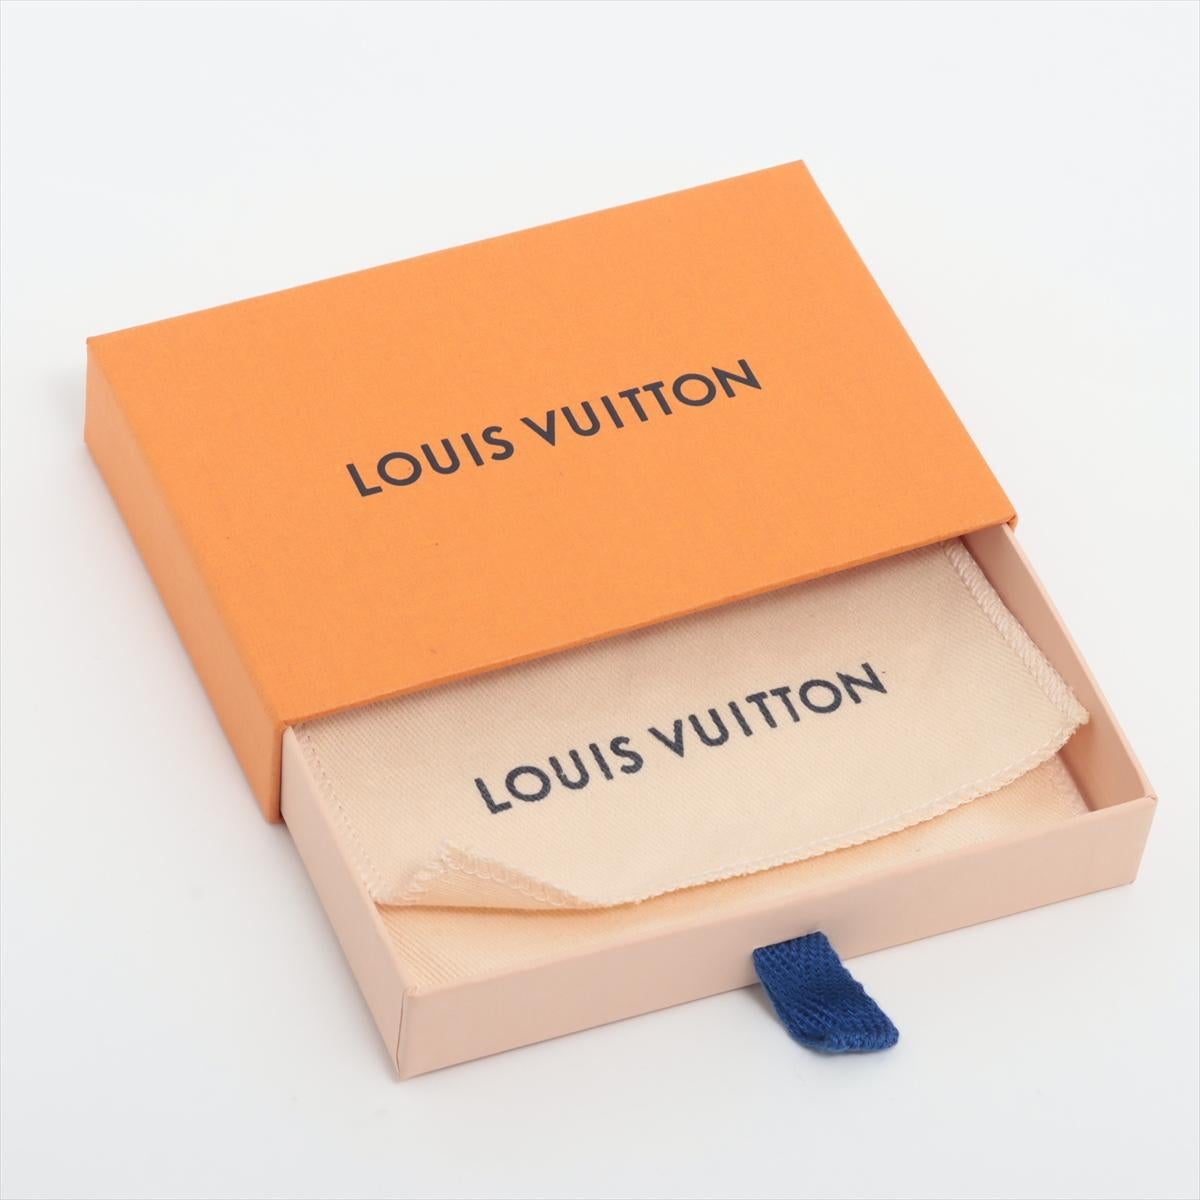 Louis Vuitton Vivienne Puppet Bag Charm For Sale 1